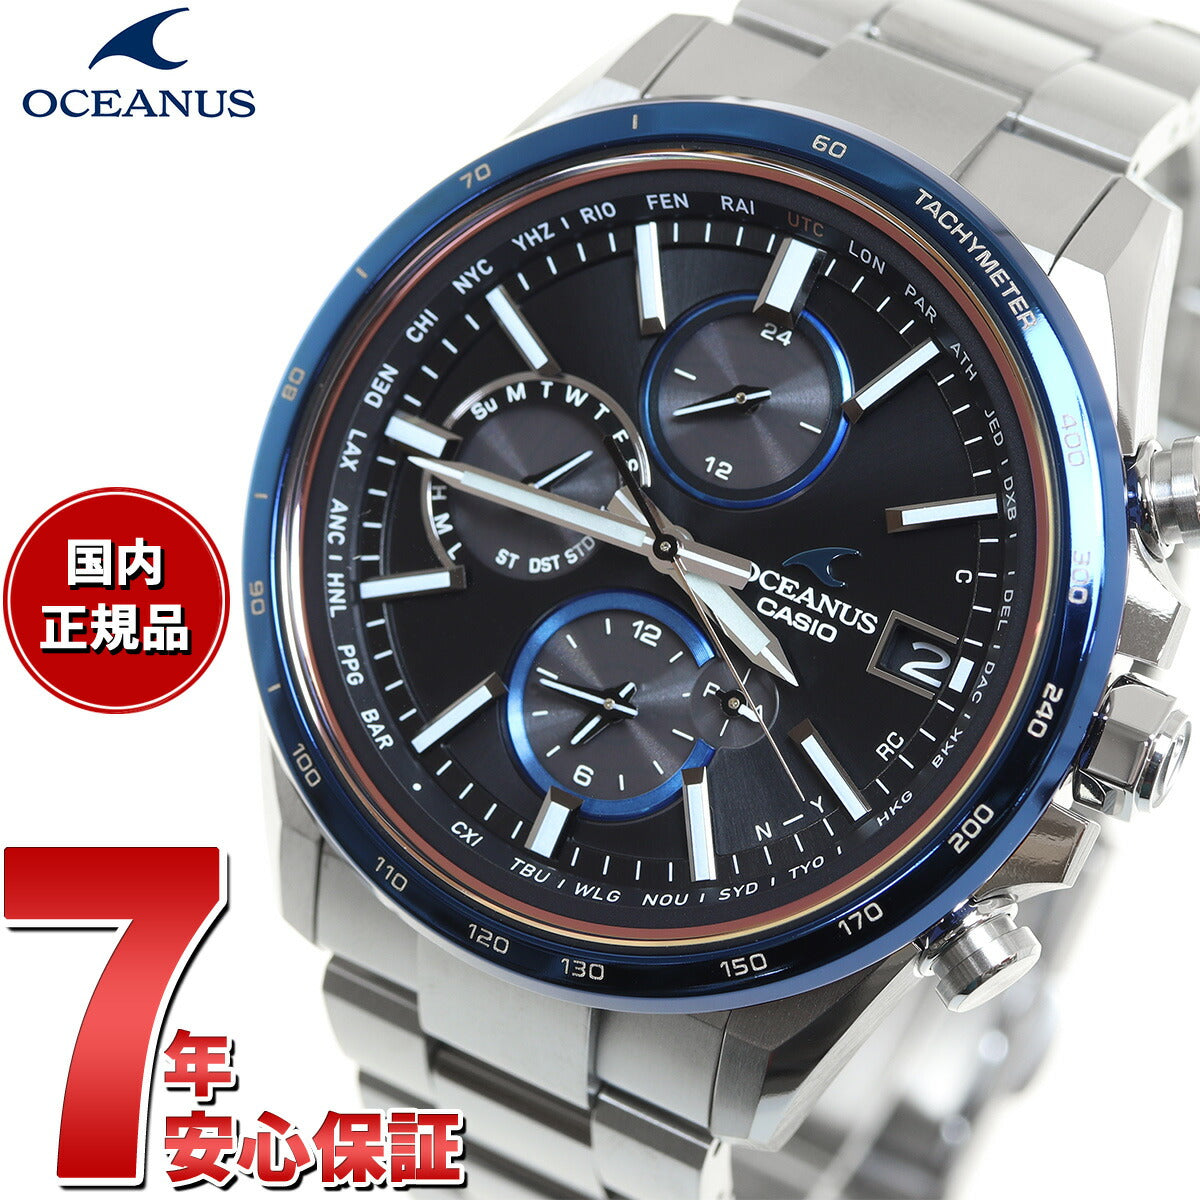 人気超激得カシオ オシアナス タフソーラー アナログ 腕時計 OCW-T2000C-2AJF メタルバンド チタン ブルー OSEANUS CASIO OCEANUS